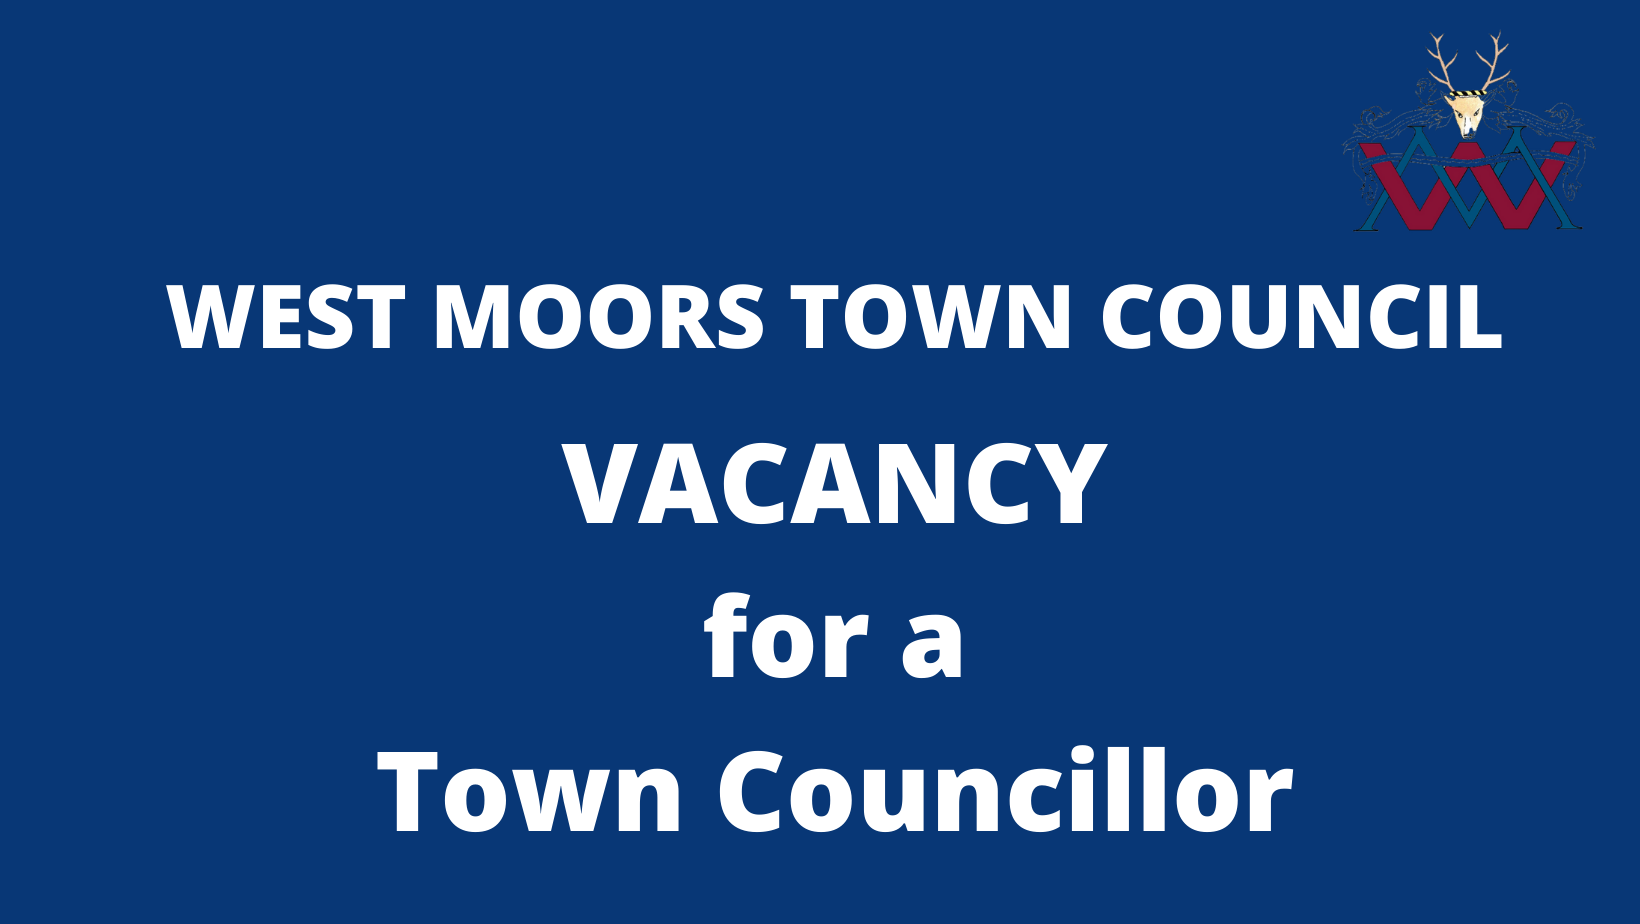 Vacancy for a Town Councillor